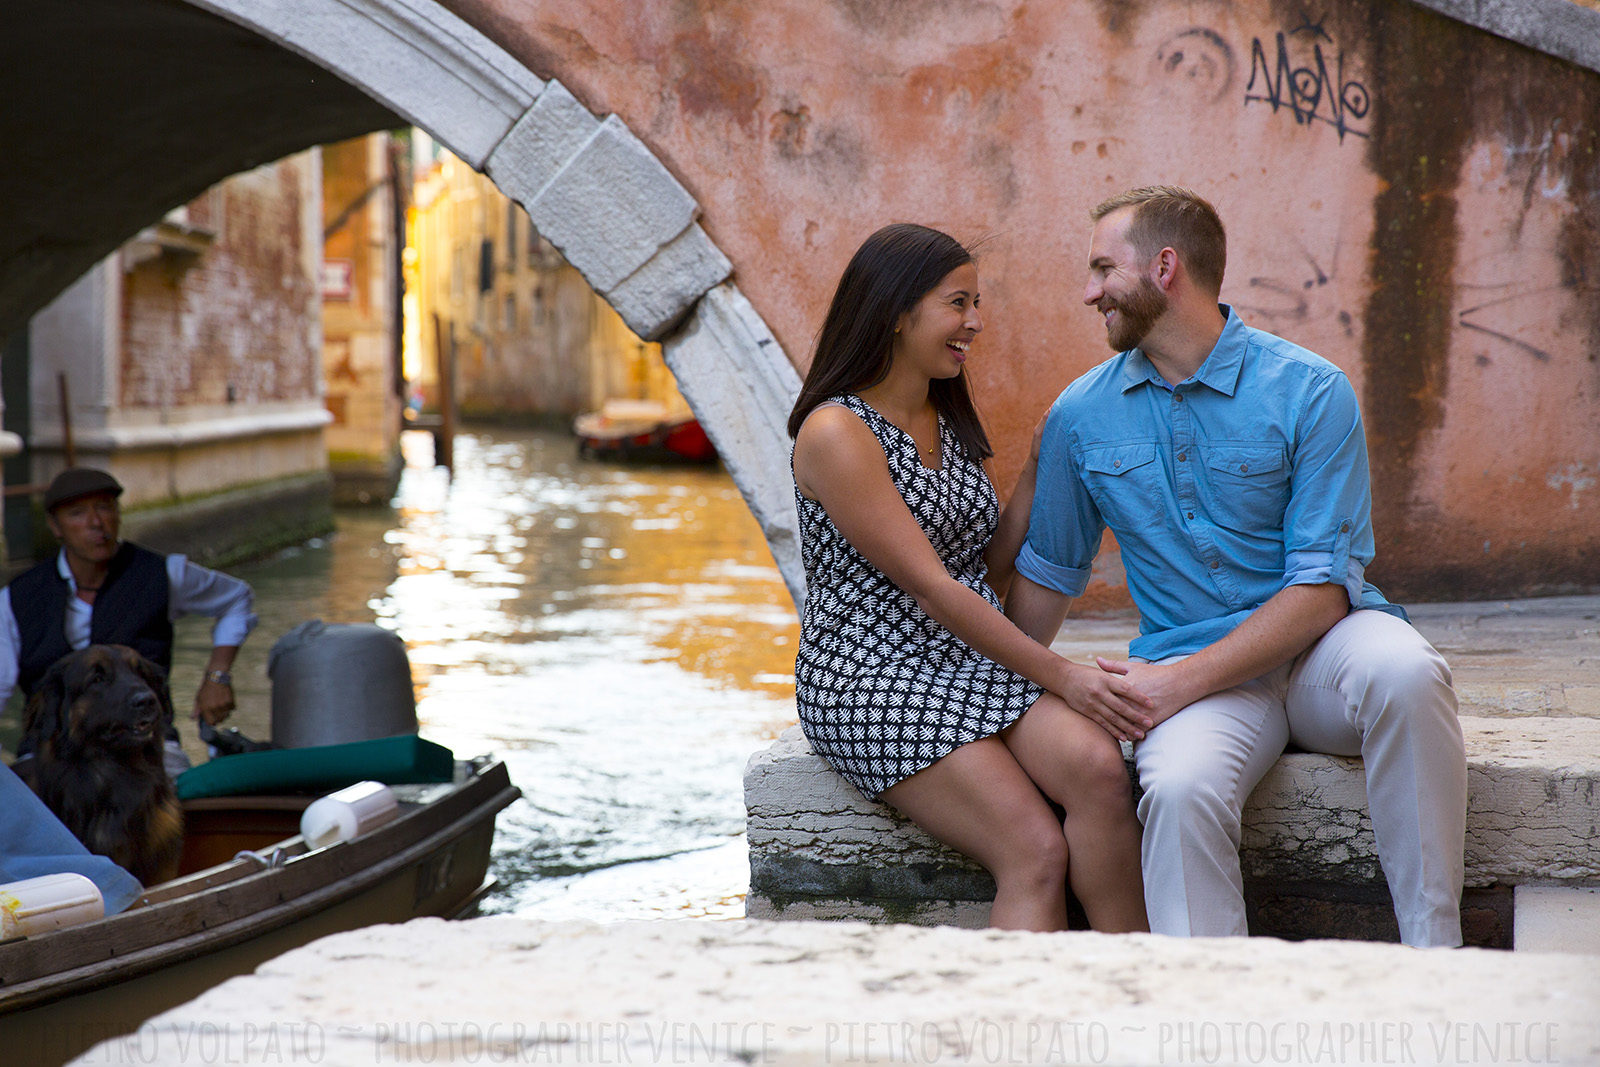 Fotografo per coppia in vacanza a Venezia